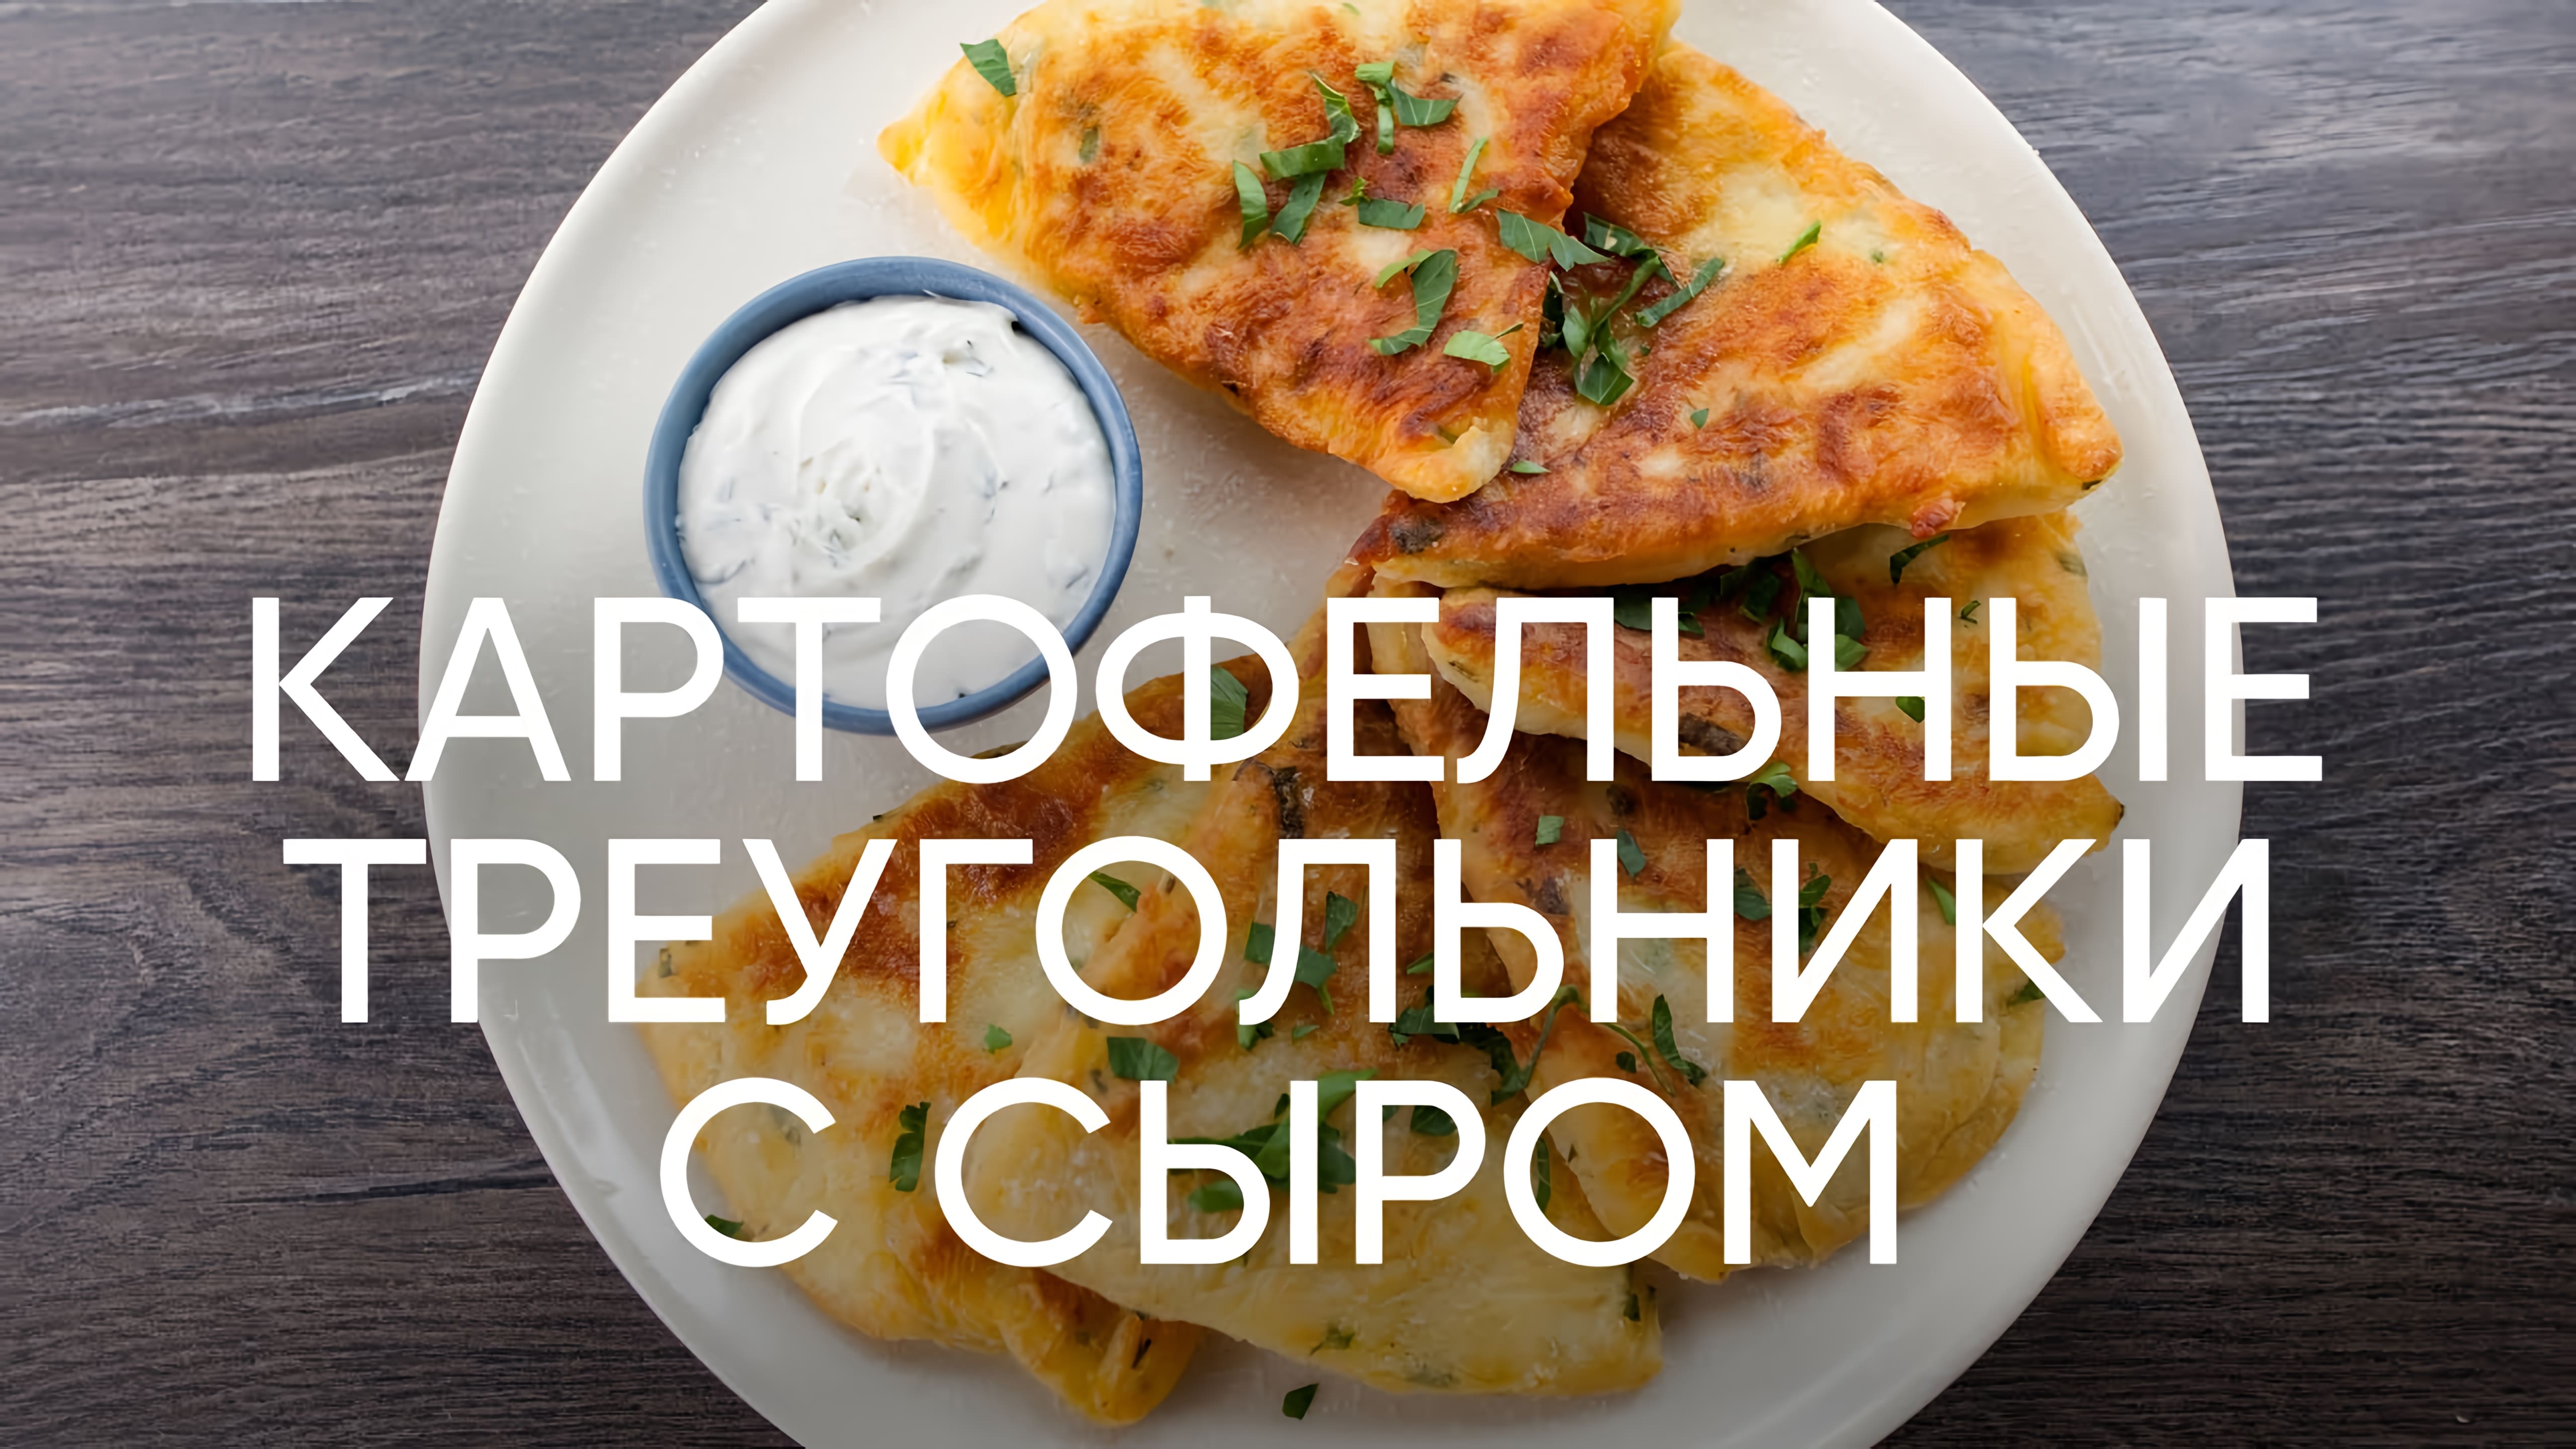 Видео: Картофельные треугольники с сыром — рецепт от шефа Бельковича  | ПроСто кухня |